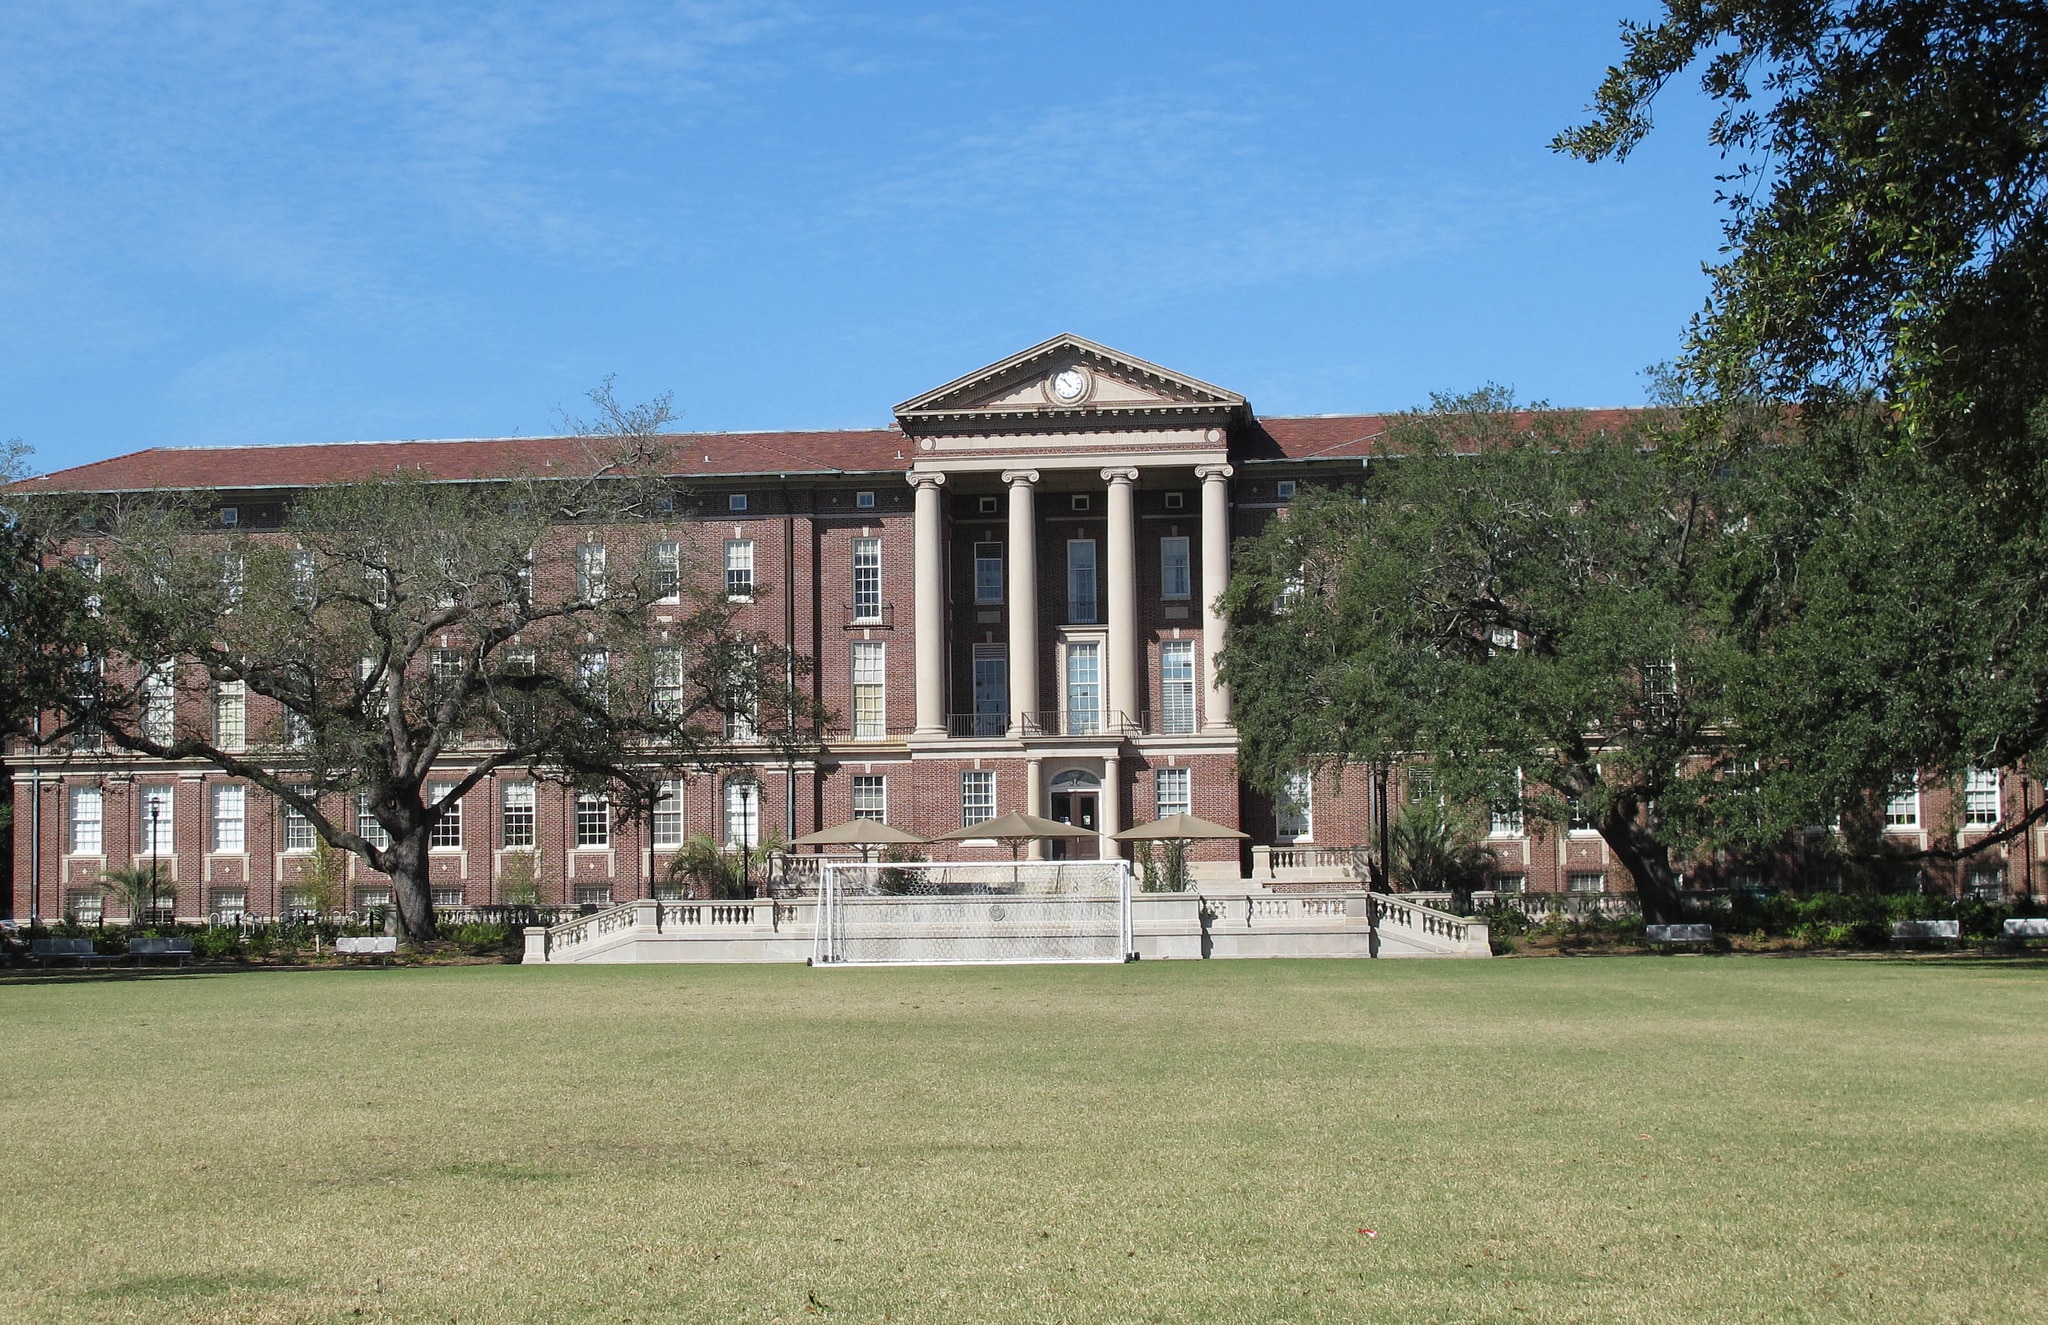 Tulane University of Louisiana in New Orleans, Louisiana